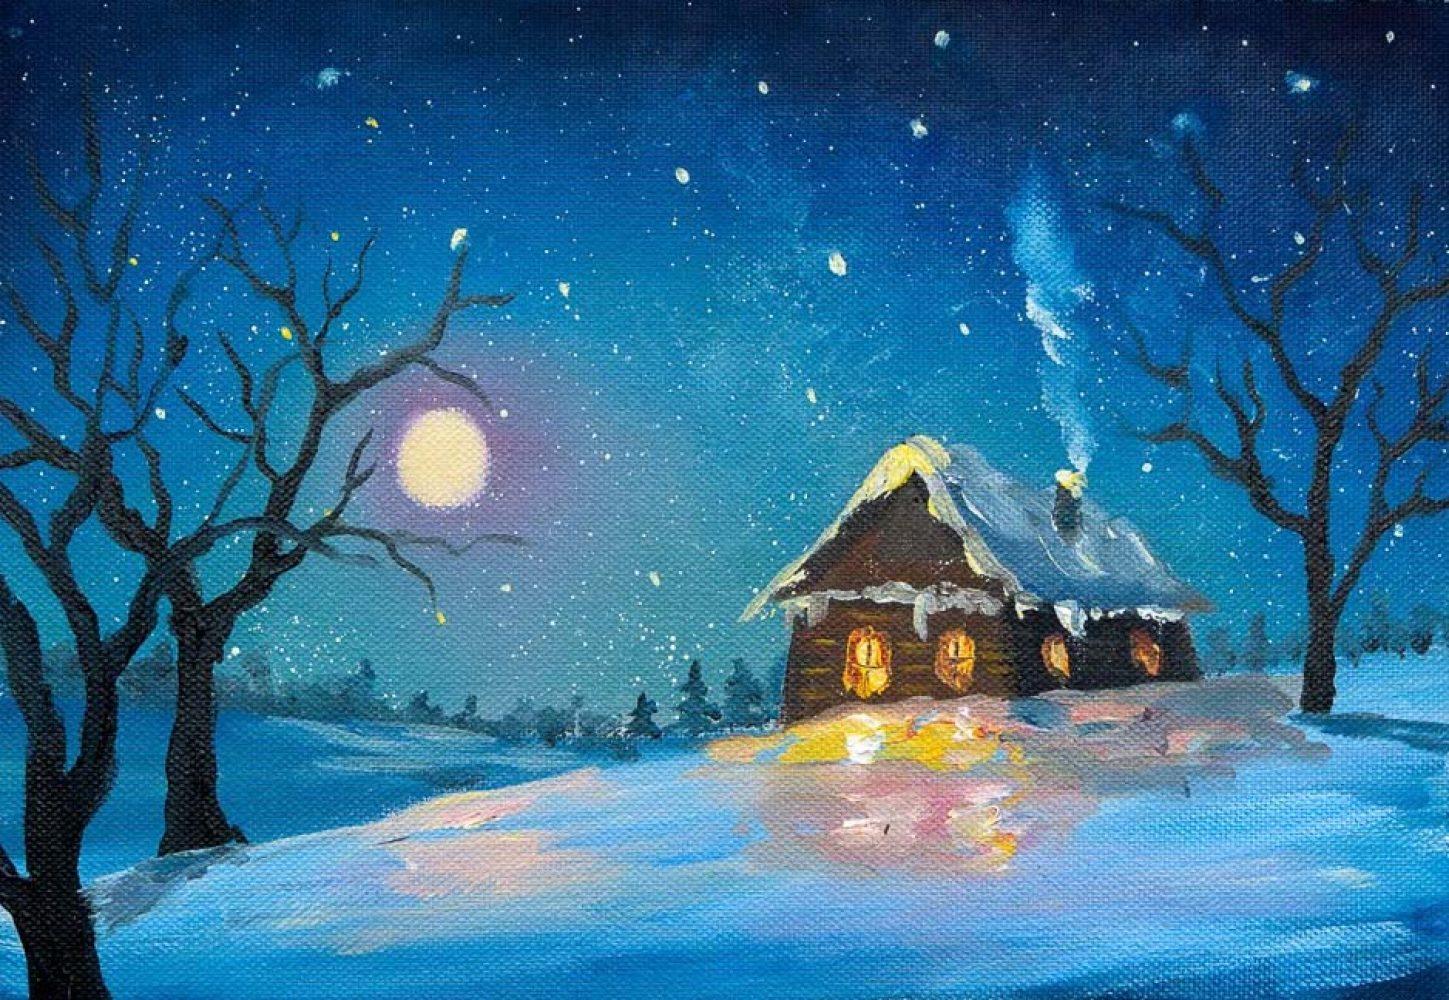 Природа Зима Сезон - Бесплатное фото на Pixabay - Pixabay